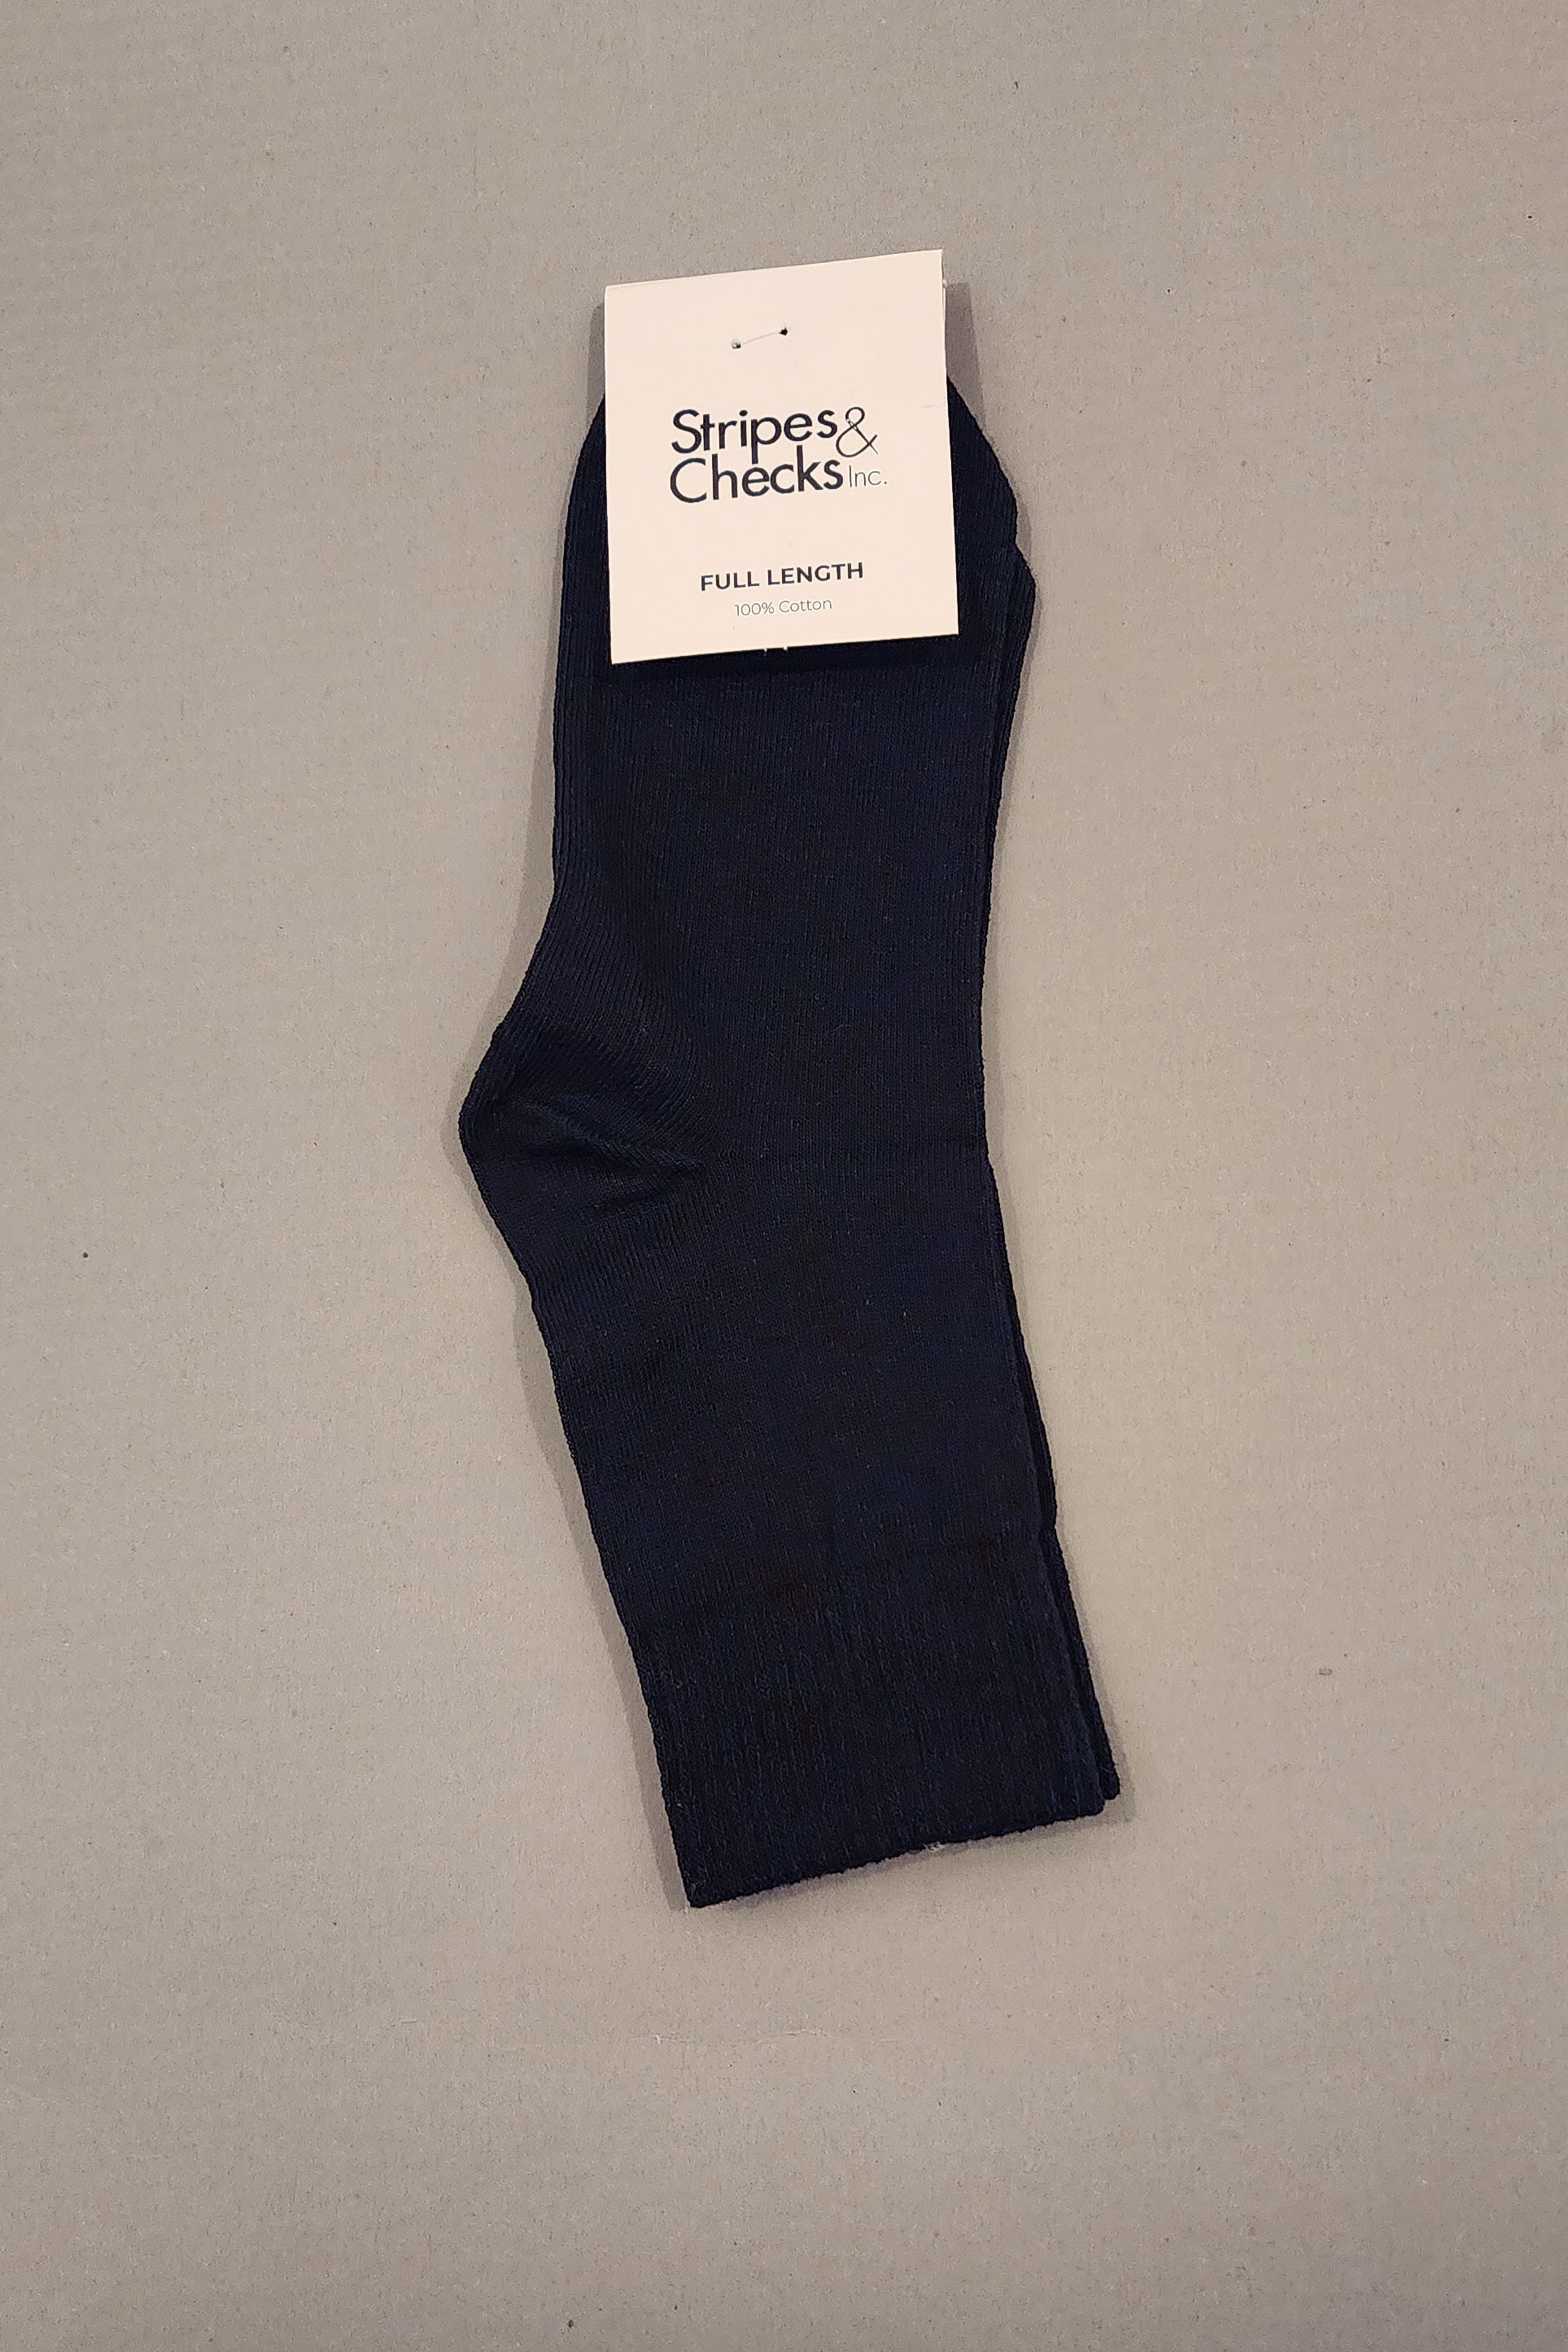 Socks - Full Length